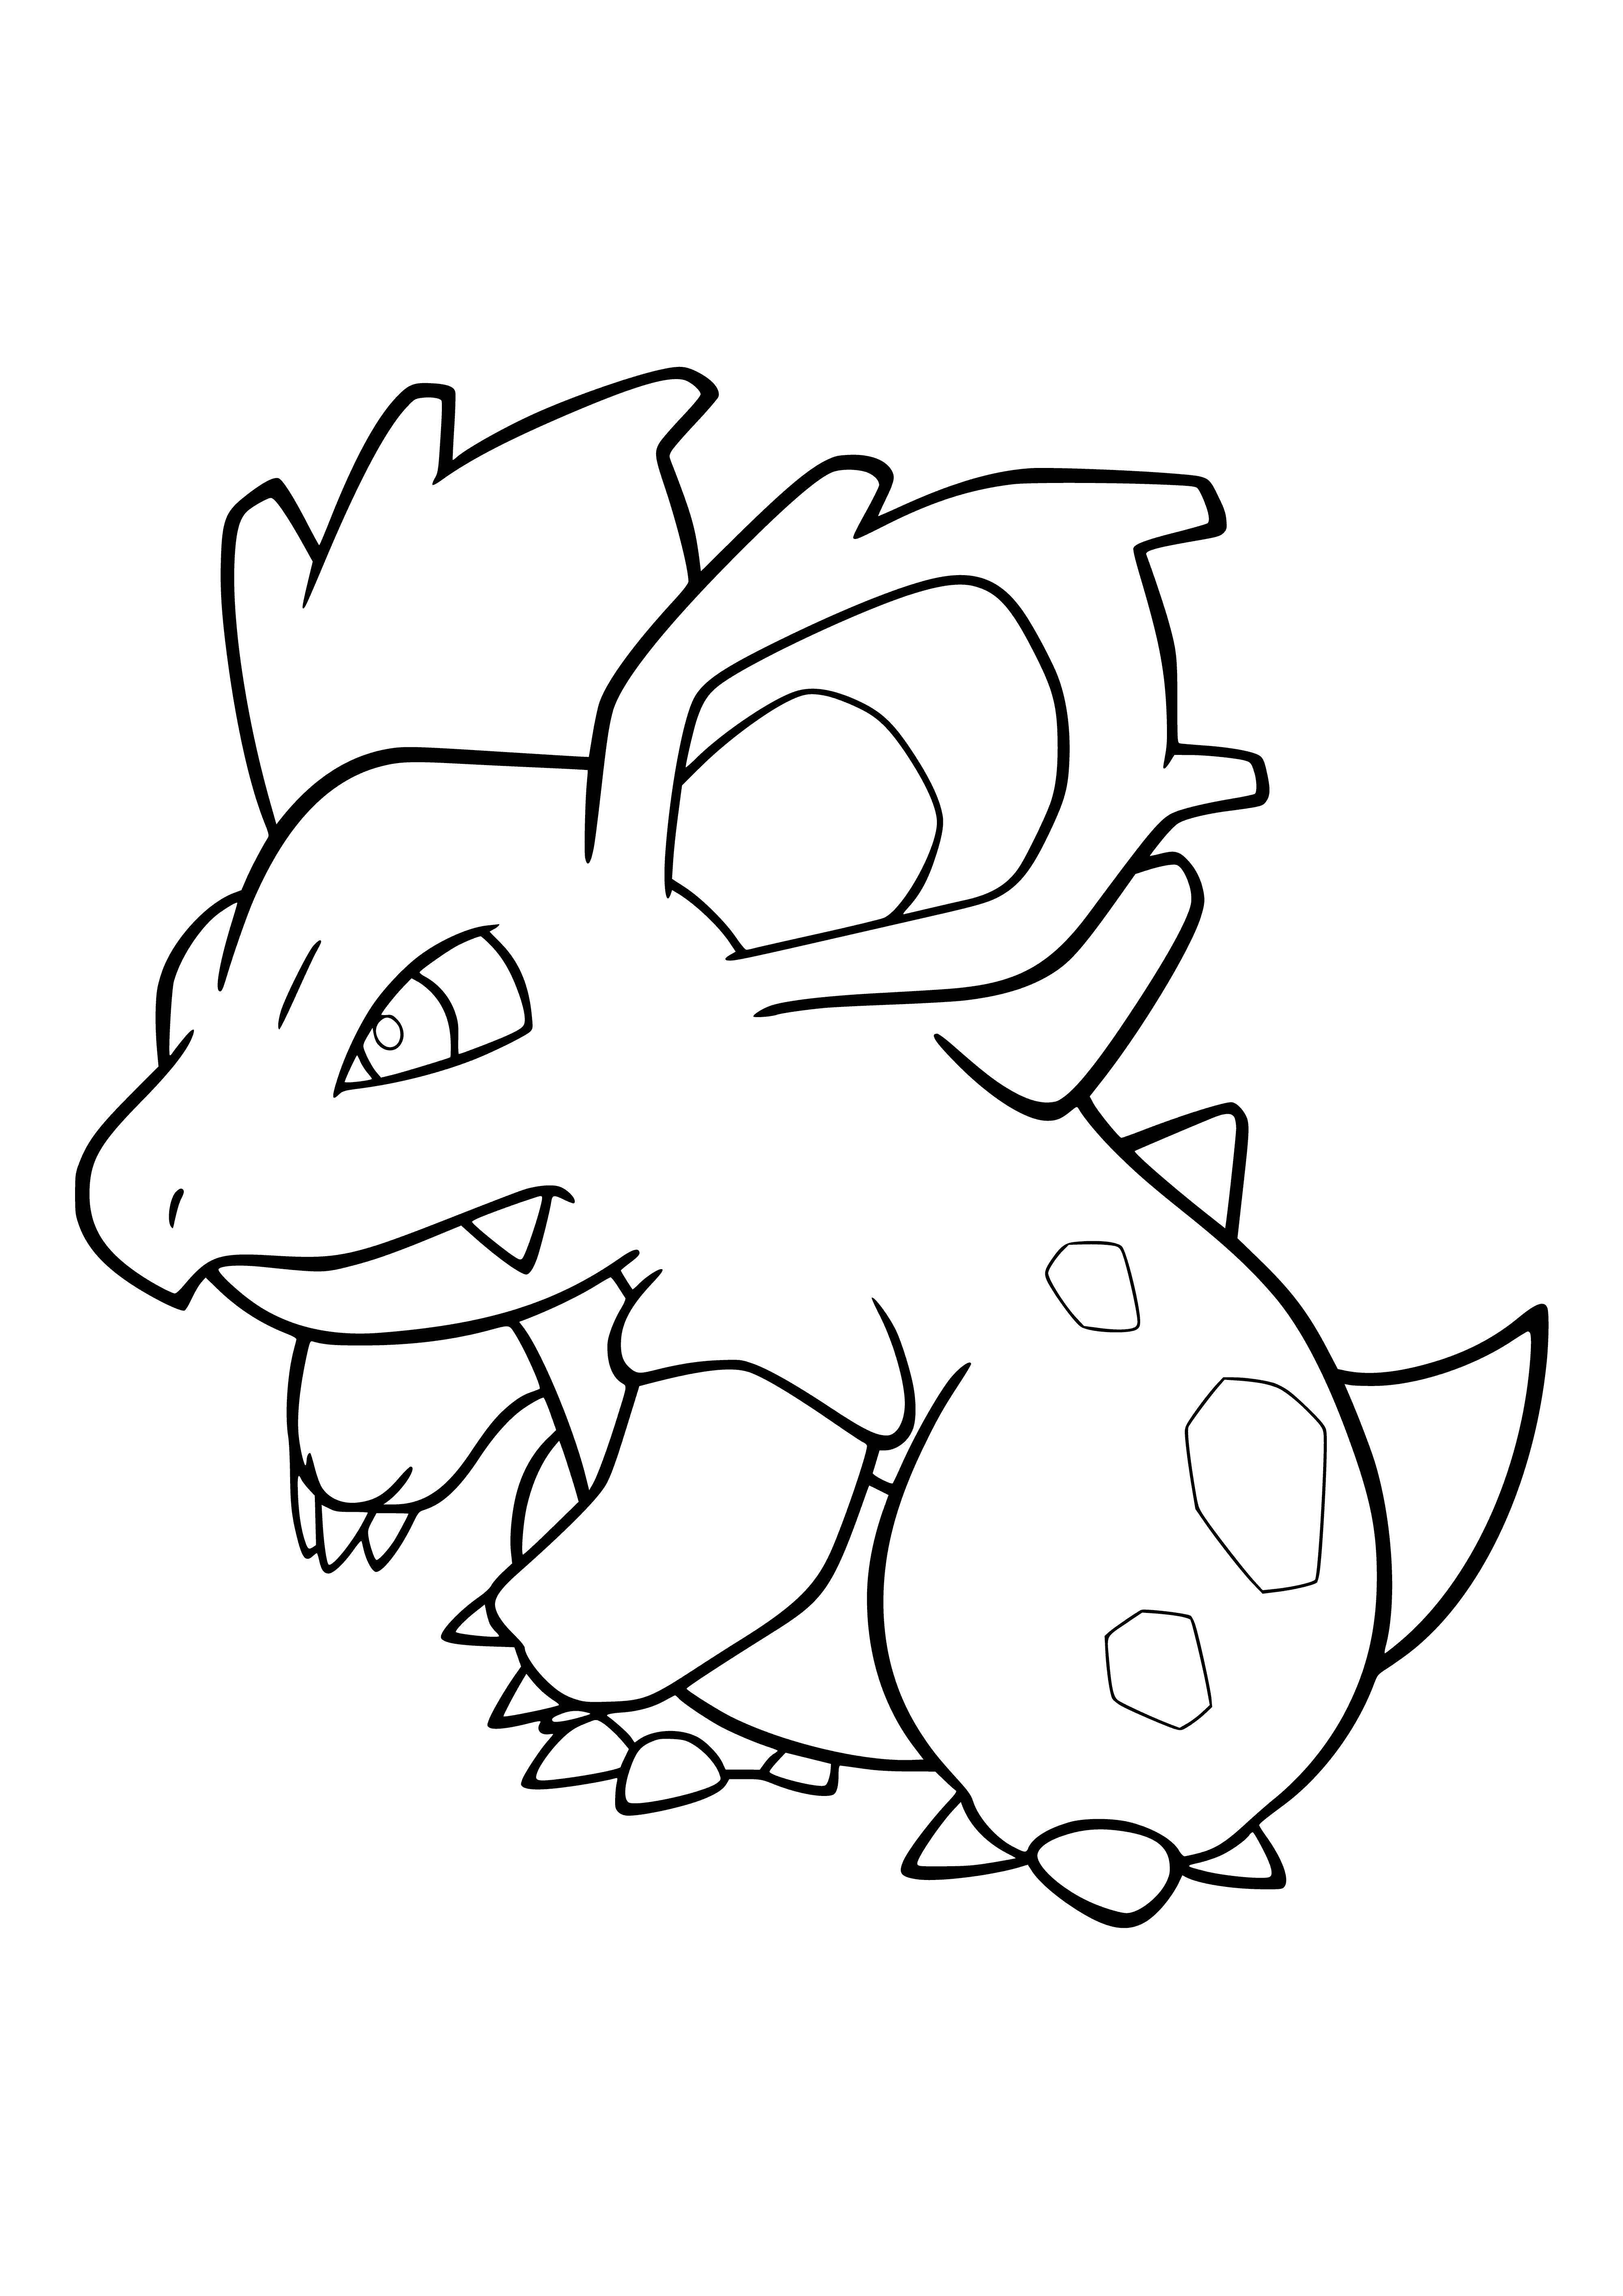 Pokemon Nidorina (Nidorina) femelle coloriage